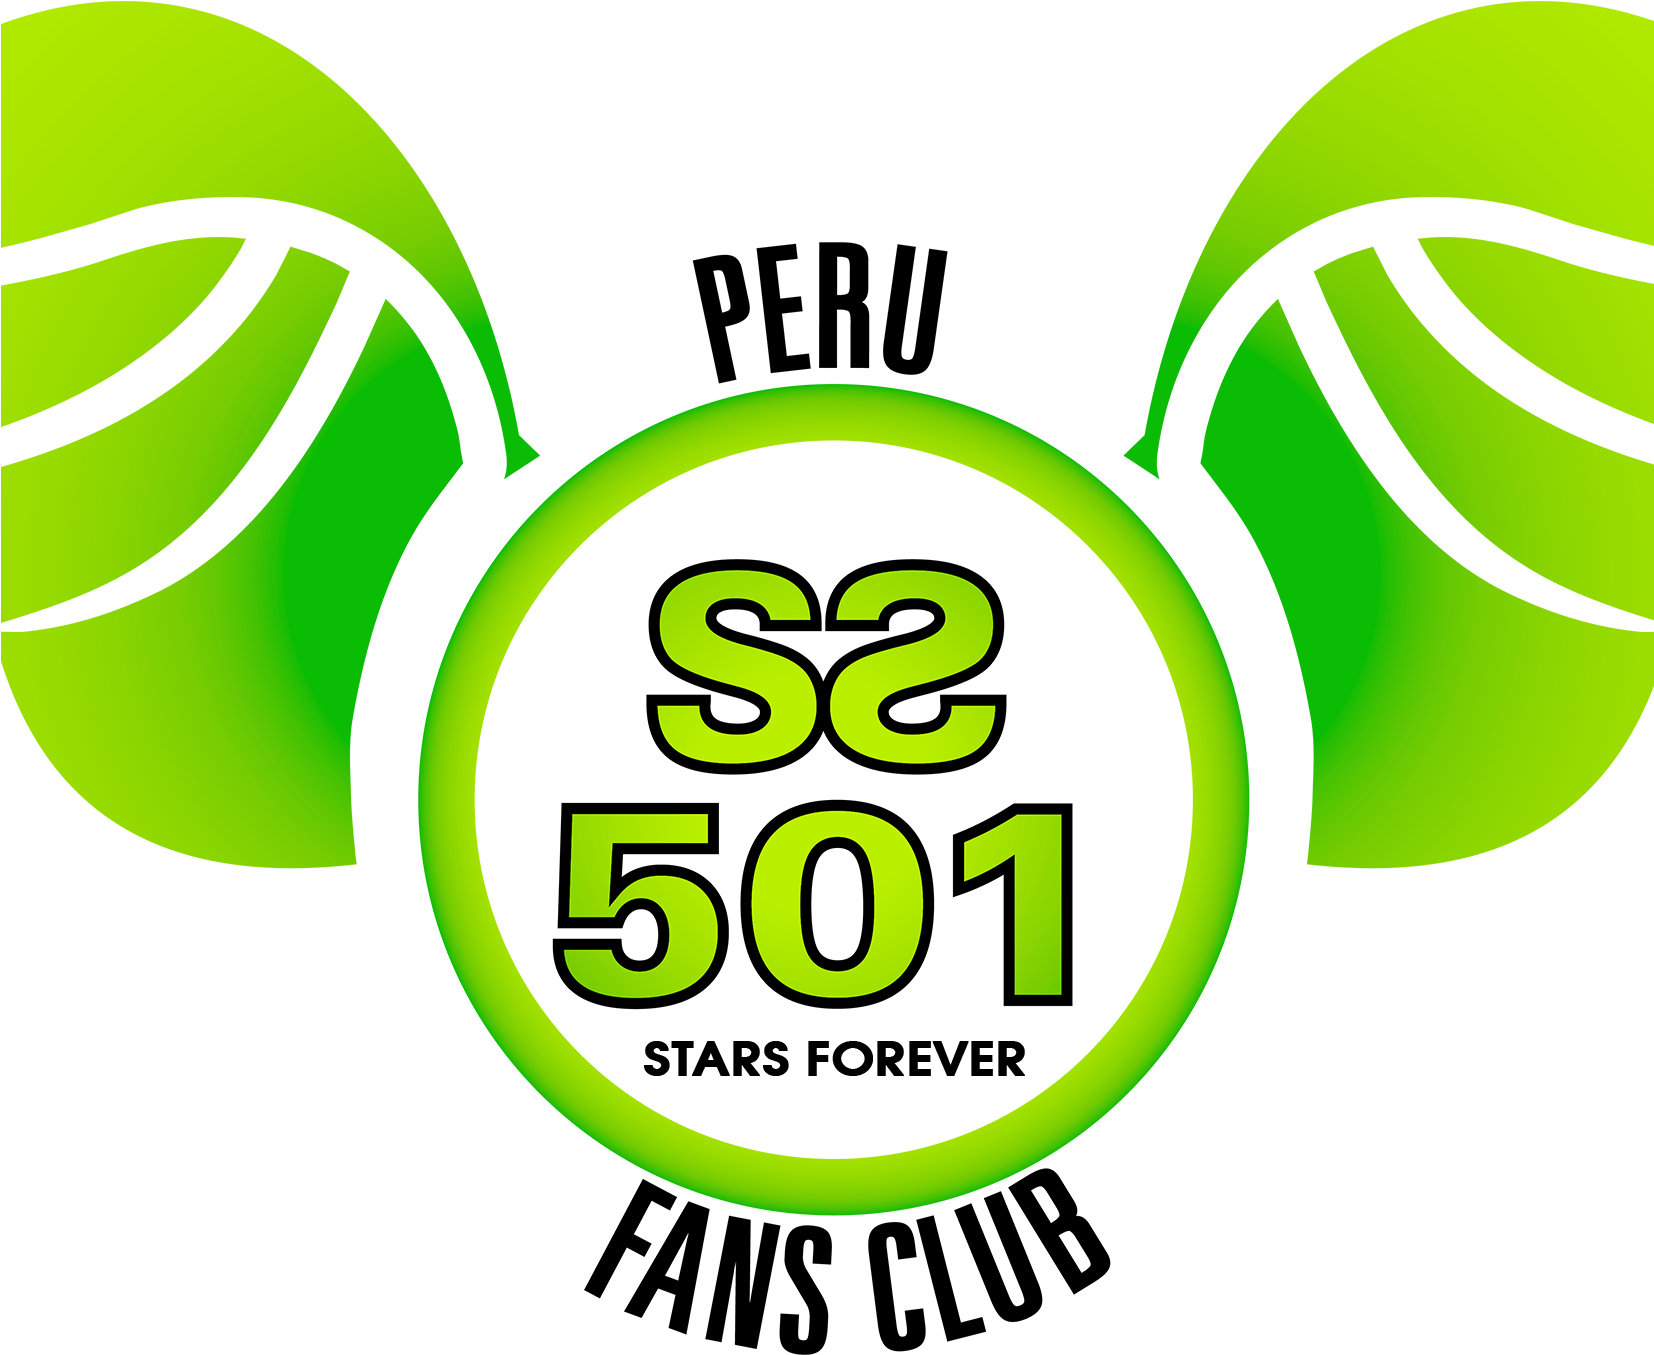 Ss501 Perú Fc - Ss501 Clipart (1653x1653), Png Download